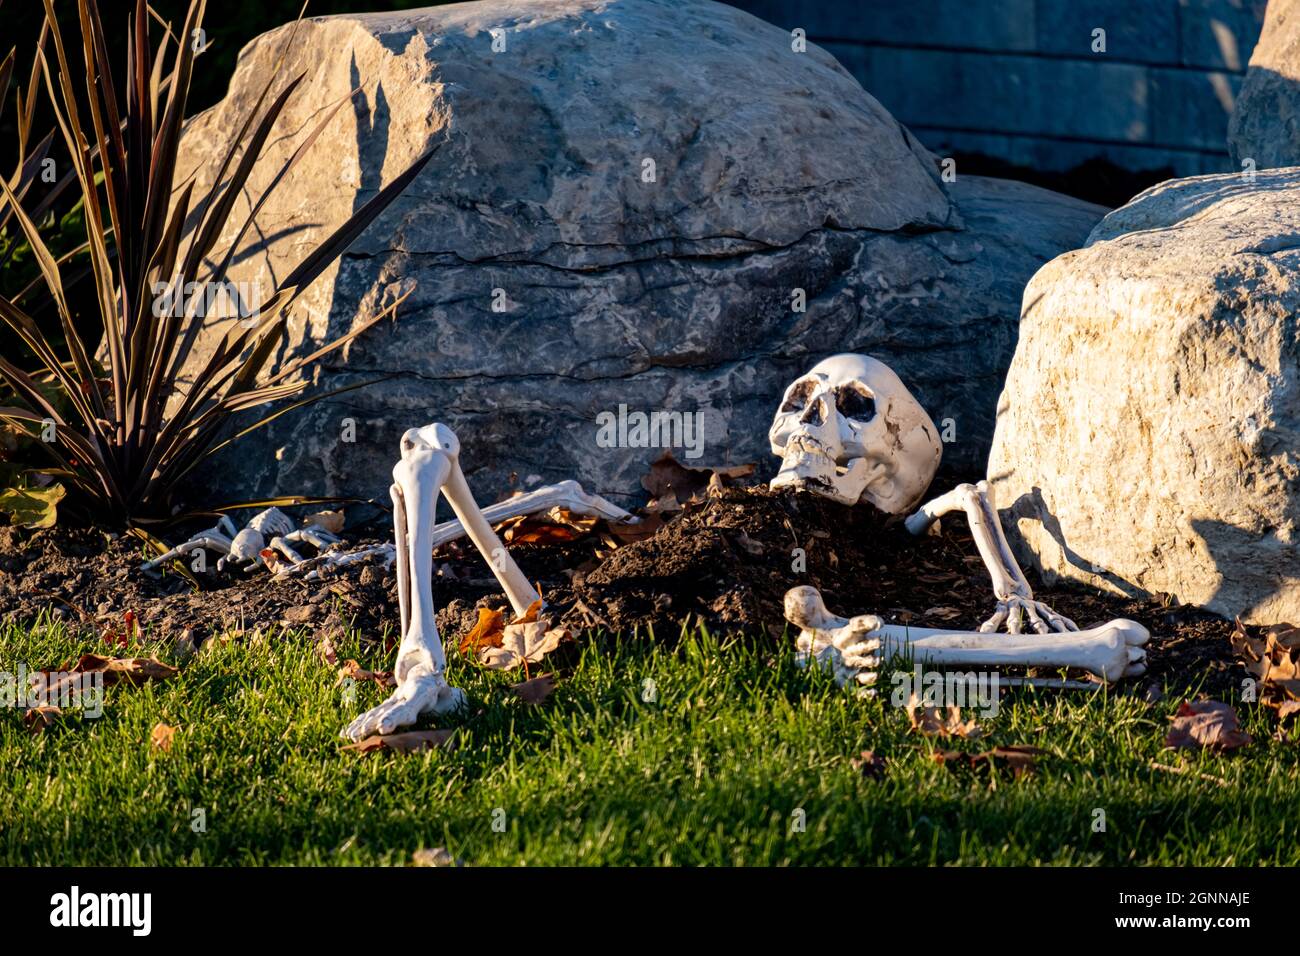 Su un prato anteriore, le ossa di plastica di una decorazione dello scheletro di Halloween sono poste parzialmente sepolte in un cumulo di sporcizia da rocce e foglie cadute. Foto Stock